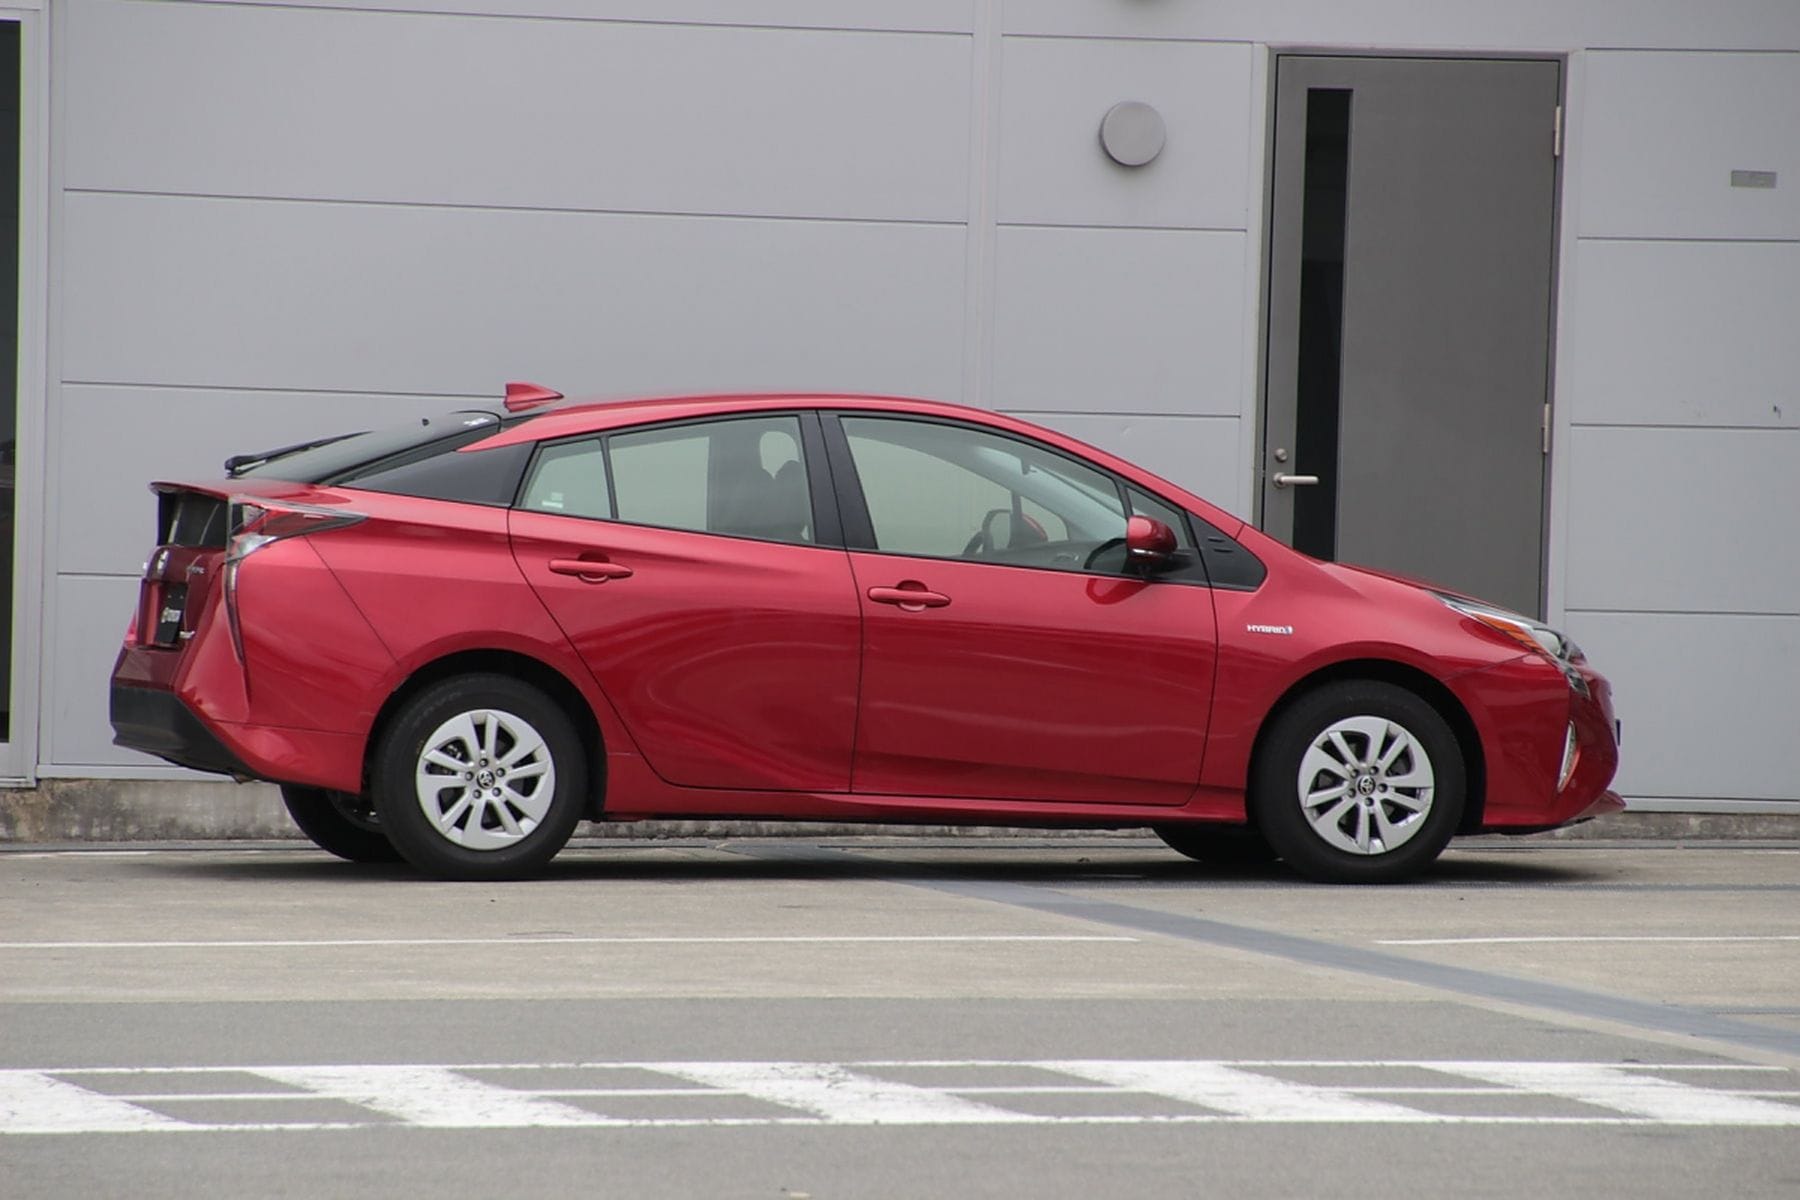 Wer auf verhältnismäßig umweltfreundliche Mobilität abfährt, werfe ein Blick auf den neuen Hybridwagen Toyota Prius.